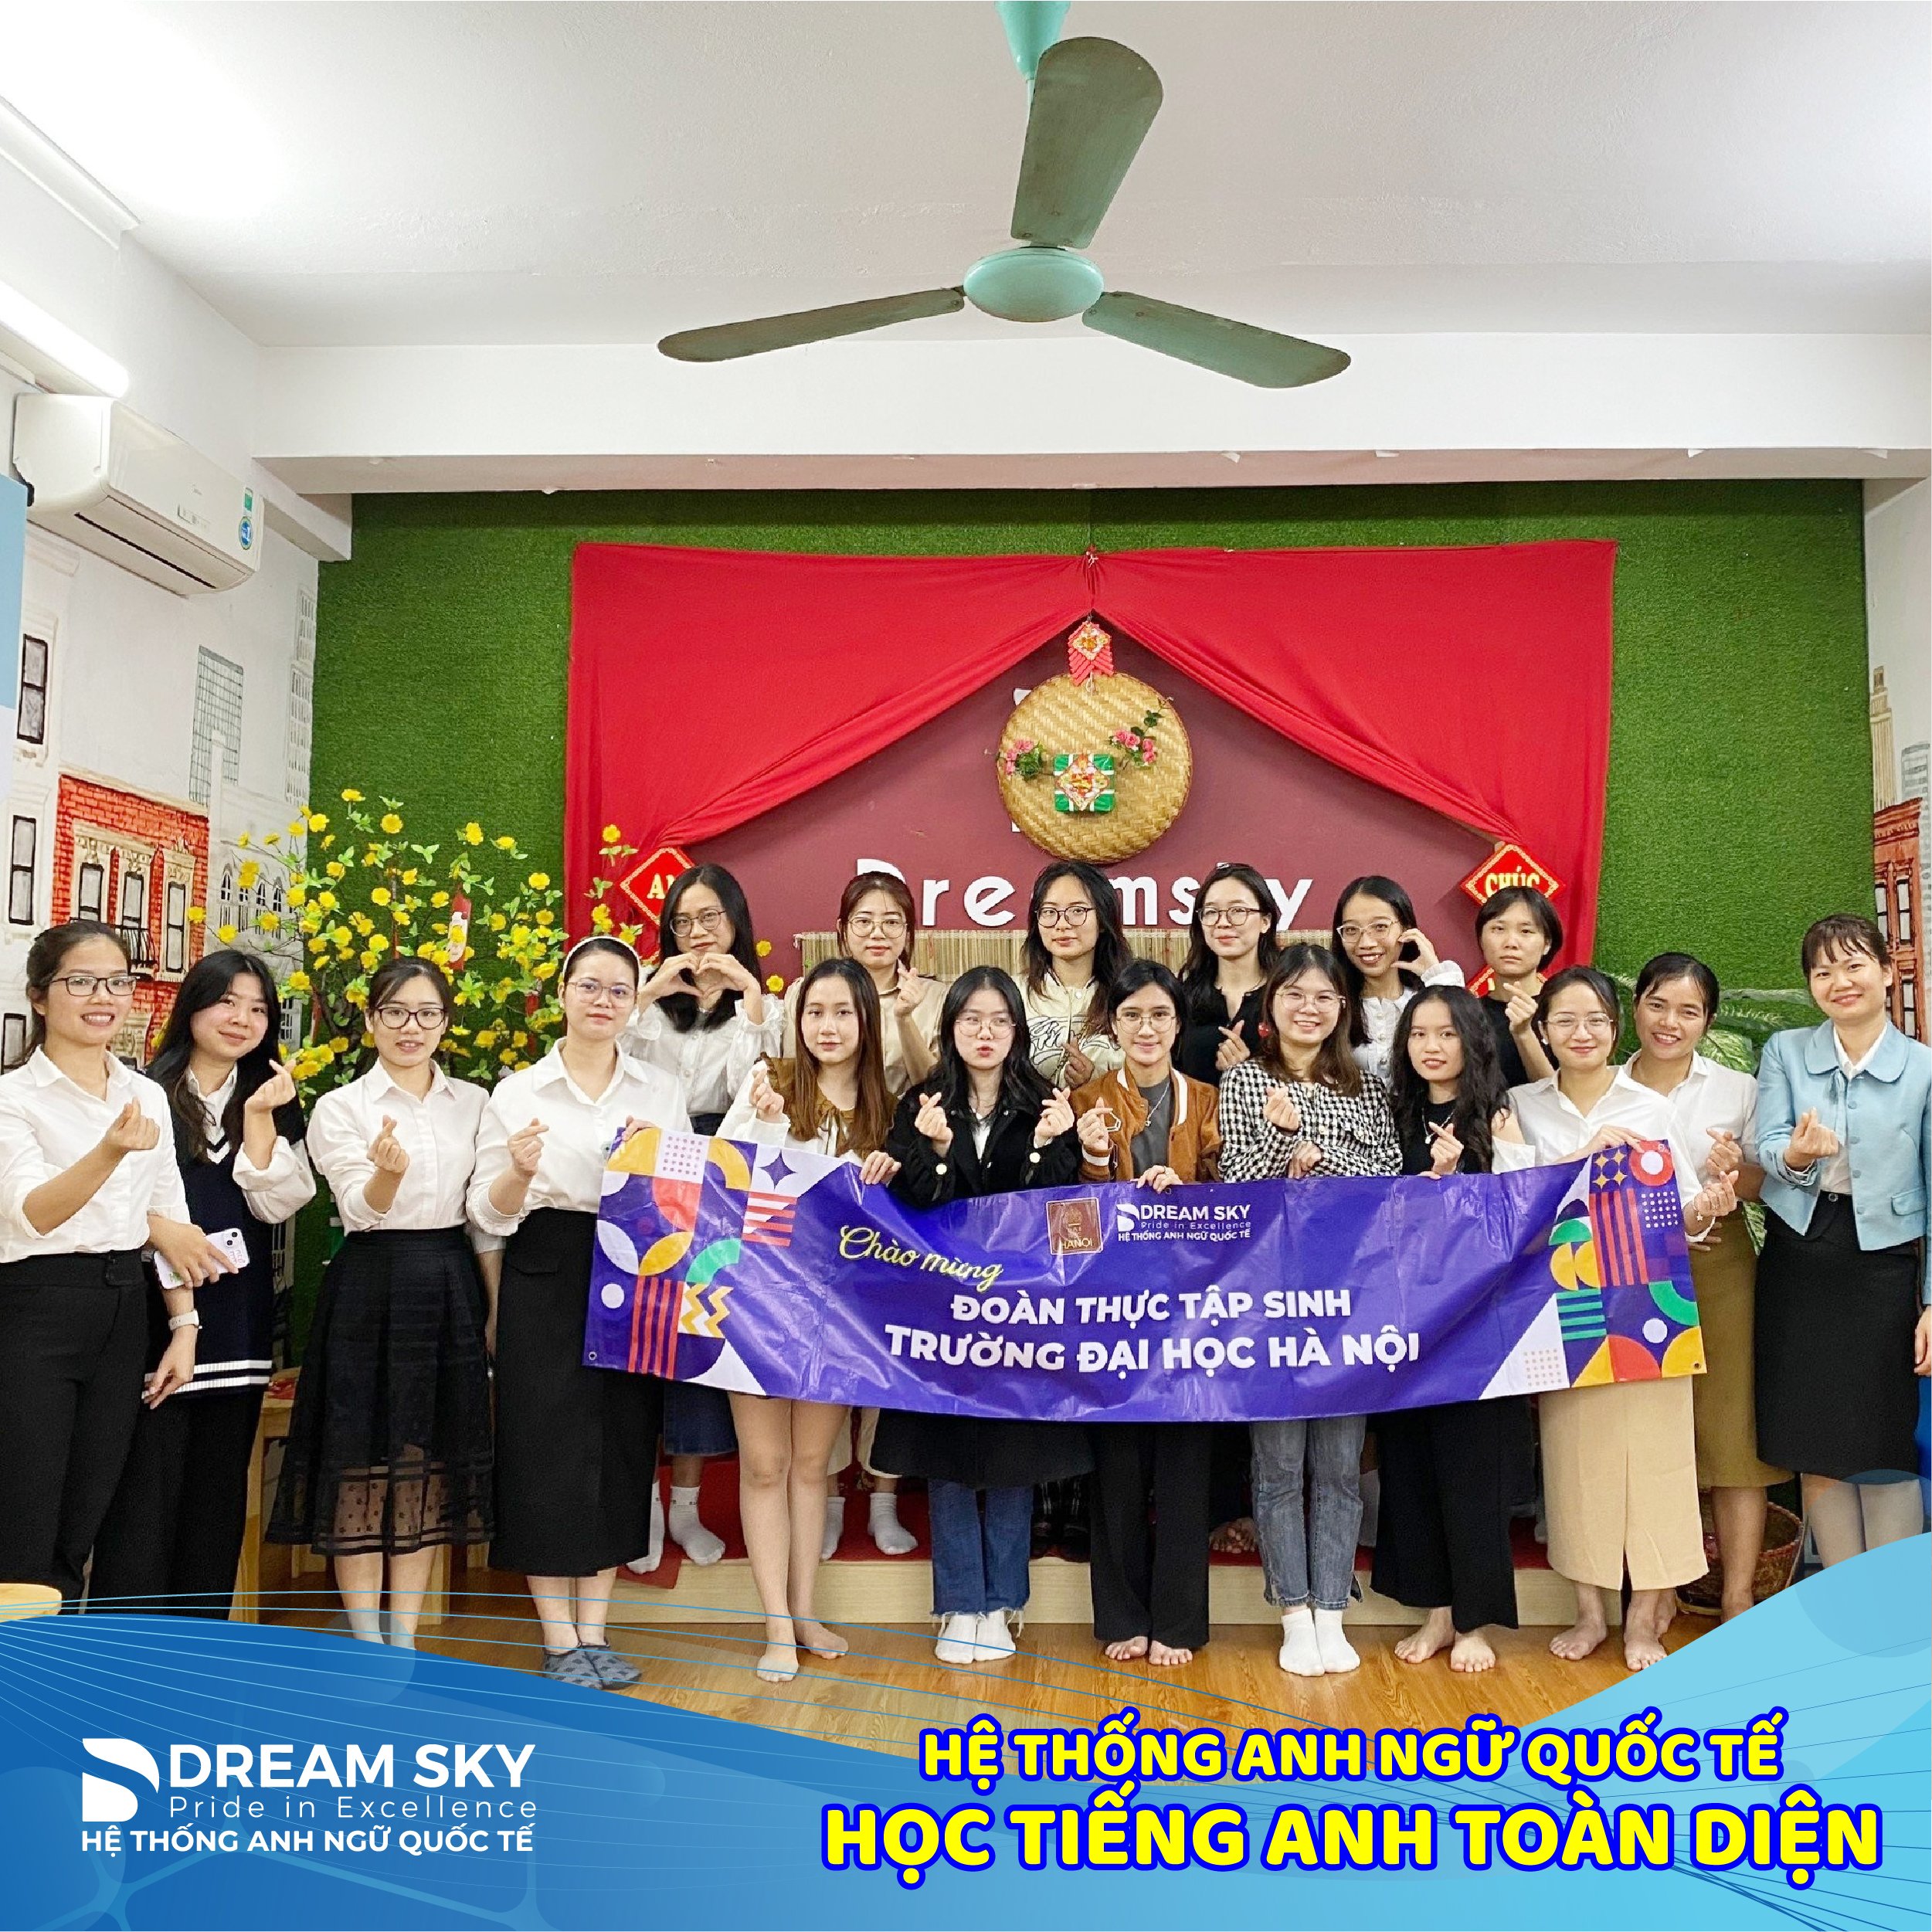 Dream Sky hân hoan chào đón Đoàn thực tập sinh Khoa ngoại ngữ Trường Đại học Hà Nội về thực tập